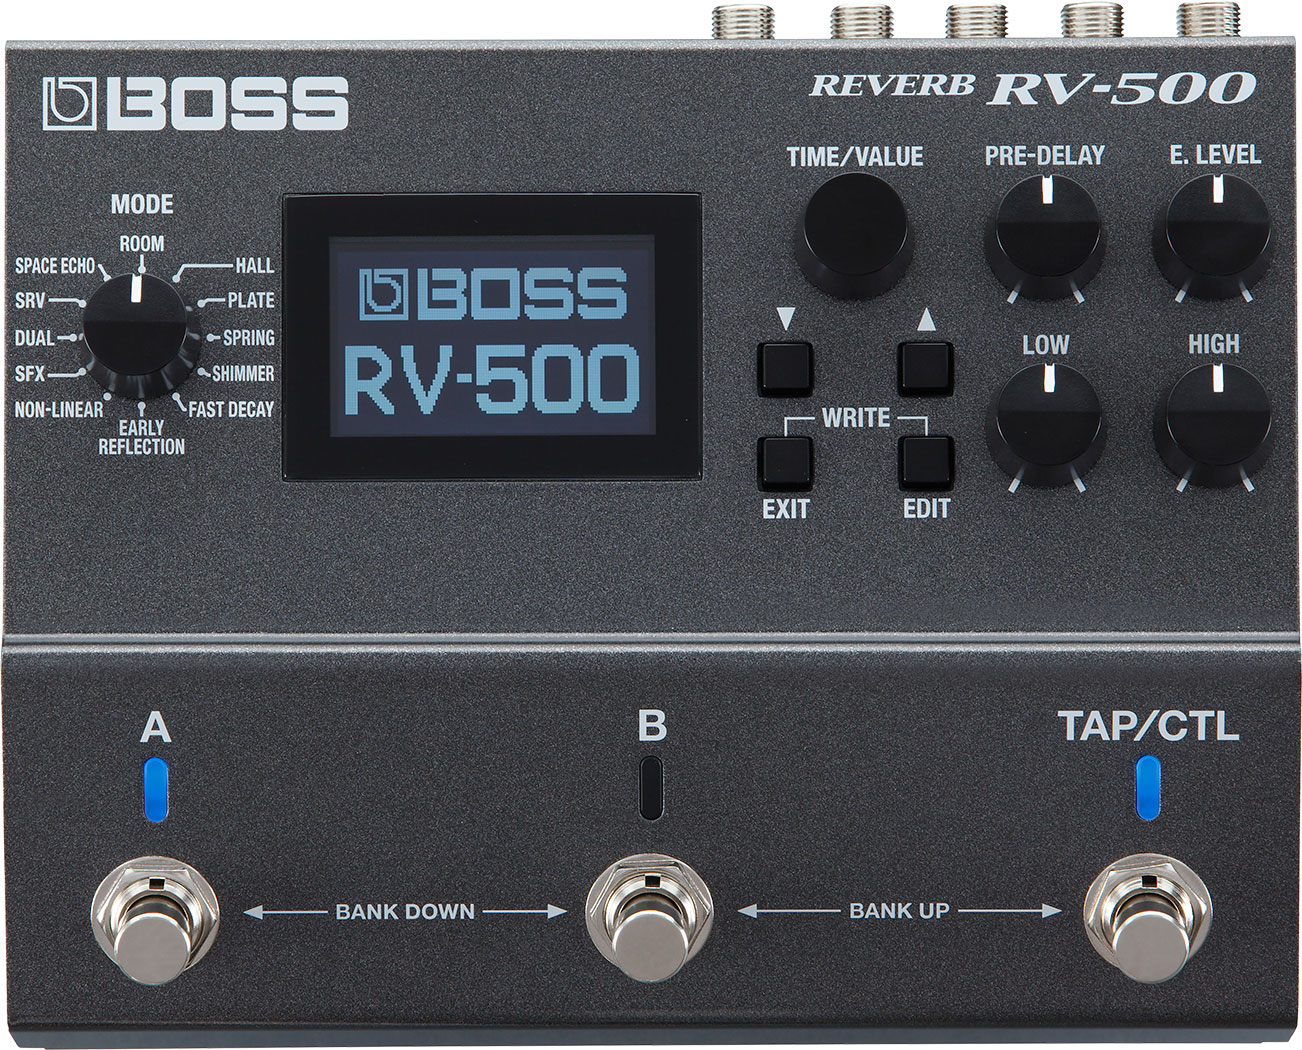 BOSS / RV-500 REVERB ボス リバーブ エフェクター